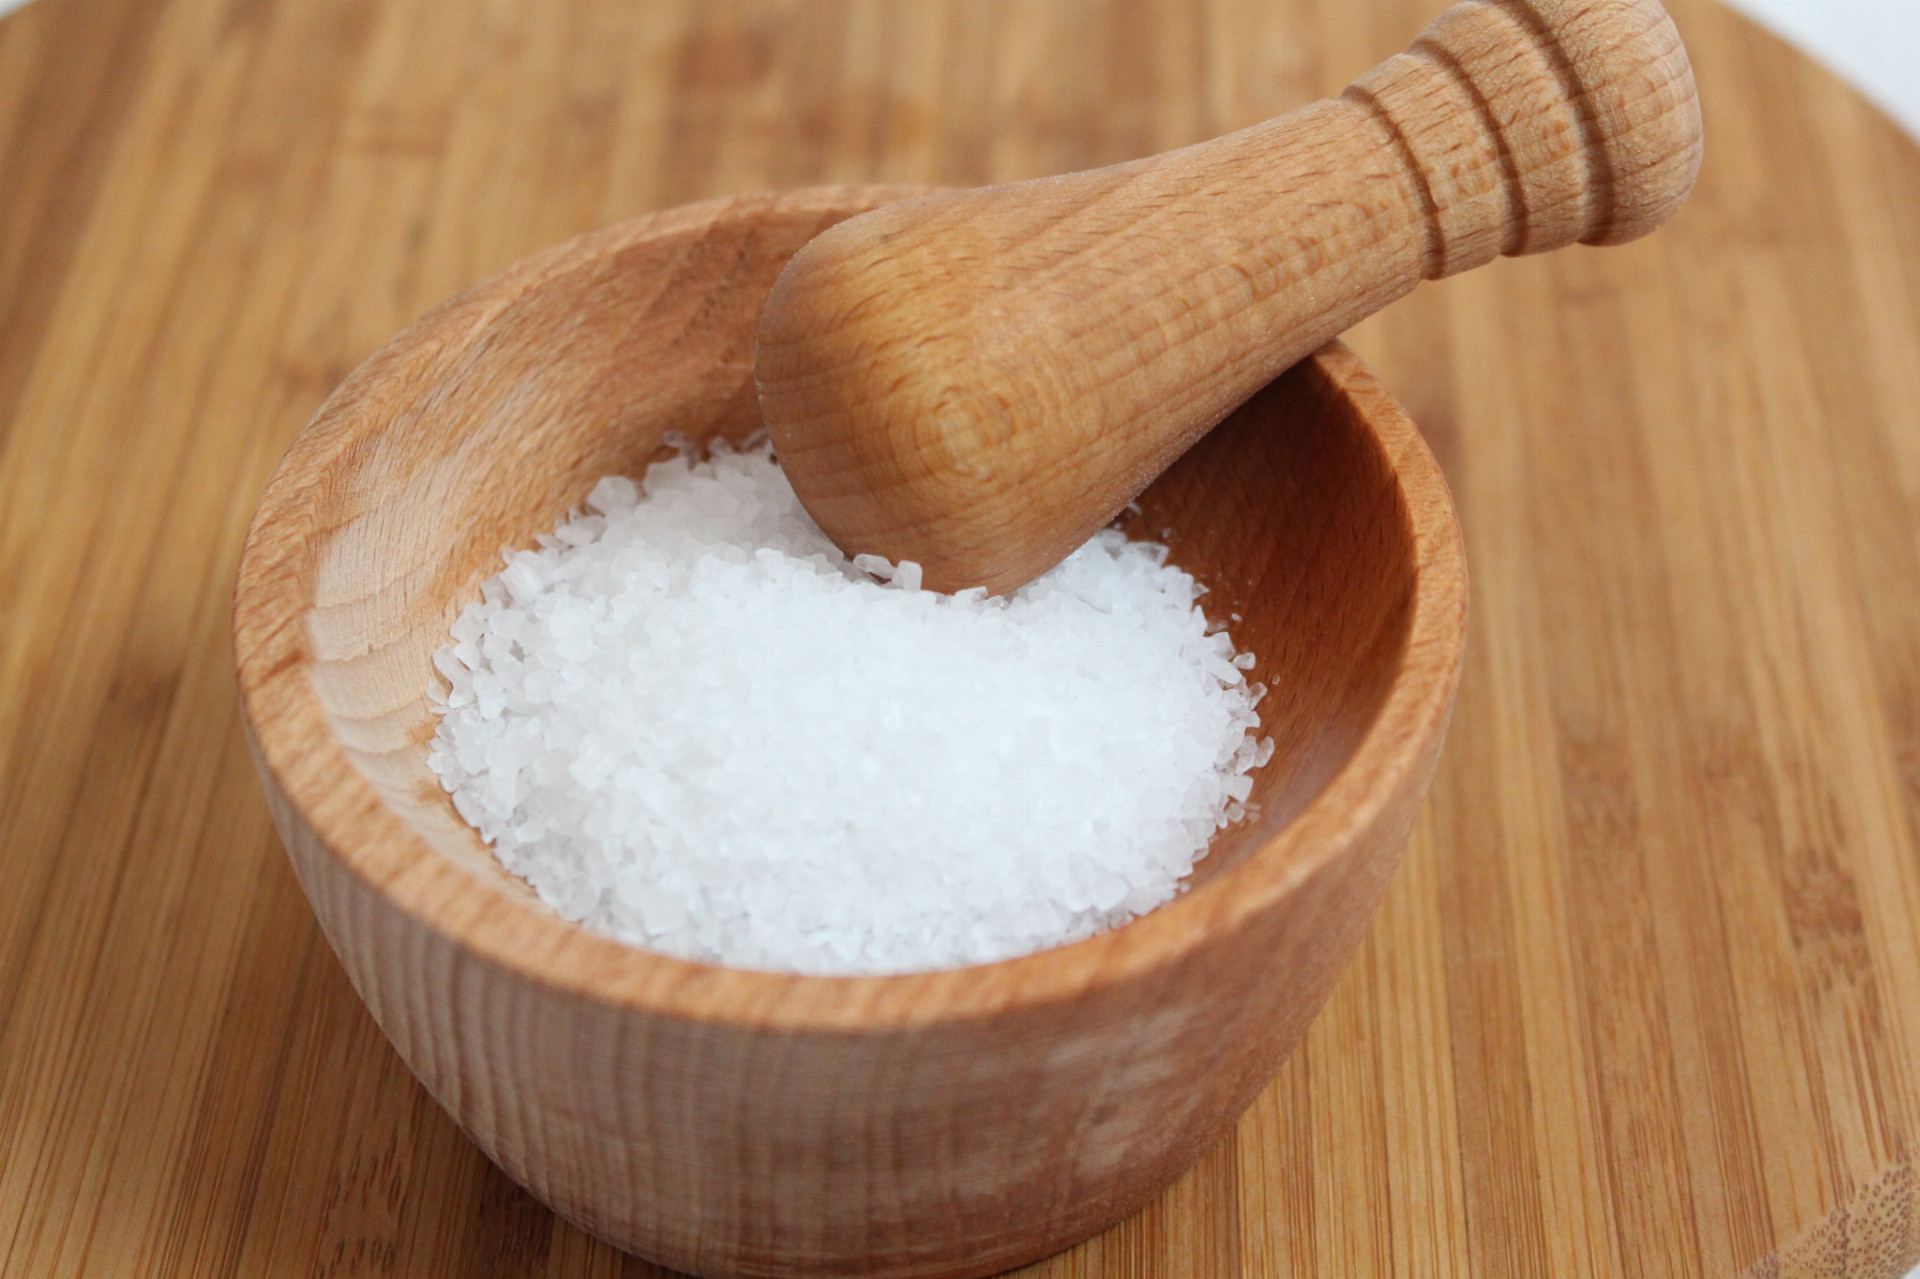 V 70. rokoch minulého storočia vedec kŕmil množstvom sodíka u potkanov, čo by bolo v prípade ľudí približne 500 gramov, uvádza Scientific American. Krvný tlak potkanov vzrástol a lekárska komunita zvýšila poplach kvôli soli. Odporúča sa, aby sme jedli len 2,3 gramov sodíka alebo približne jednu čajovú lyžičku soli za deň, ale jedlá v reštaurácii a spracované potraviny obsahujú také veľké množstvo sodíka, že len málo ľudí túto hranicu spĺňa.

Štúdia z roku 2016 však naznačuje, že limity sú príliš prísne. Medzi jedincami, ktoré konzumujú veľké množstvo sodíka, zaznamenali výskyt kardiovaskulárnych problémov iba osoby s vysokým krvným tlakom. Ľudia, ktorí konzumovali najnižšie množstvo sodíka - či už mali alebo nemali vysoký krvný tlak - prekvapivo zaznamenali aj ďalšie kardiovaskulárne príhody a úmrtia. 